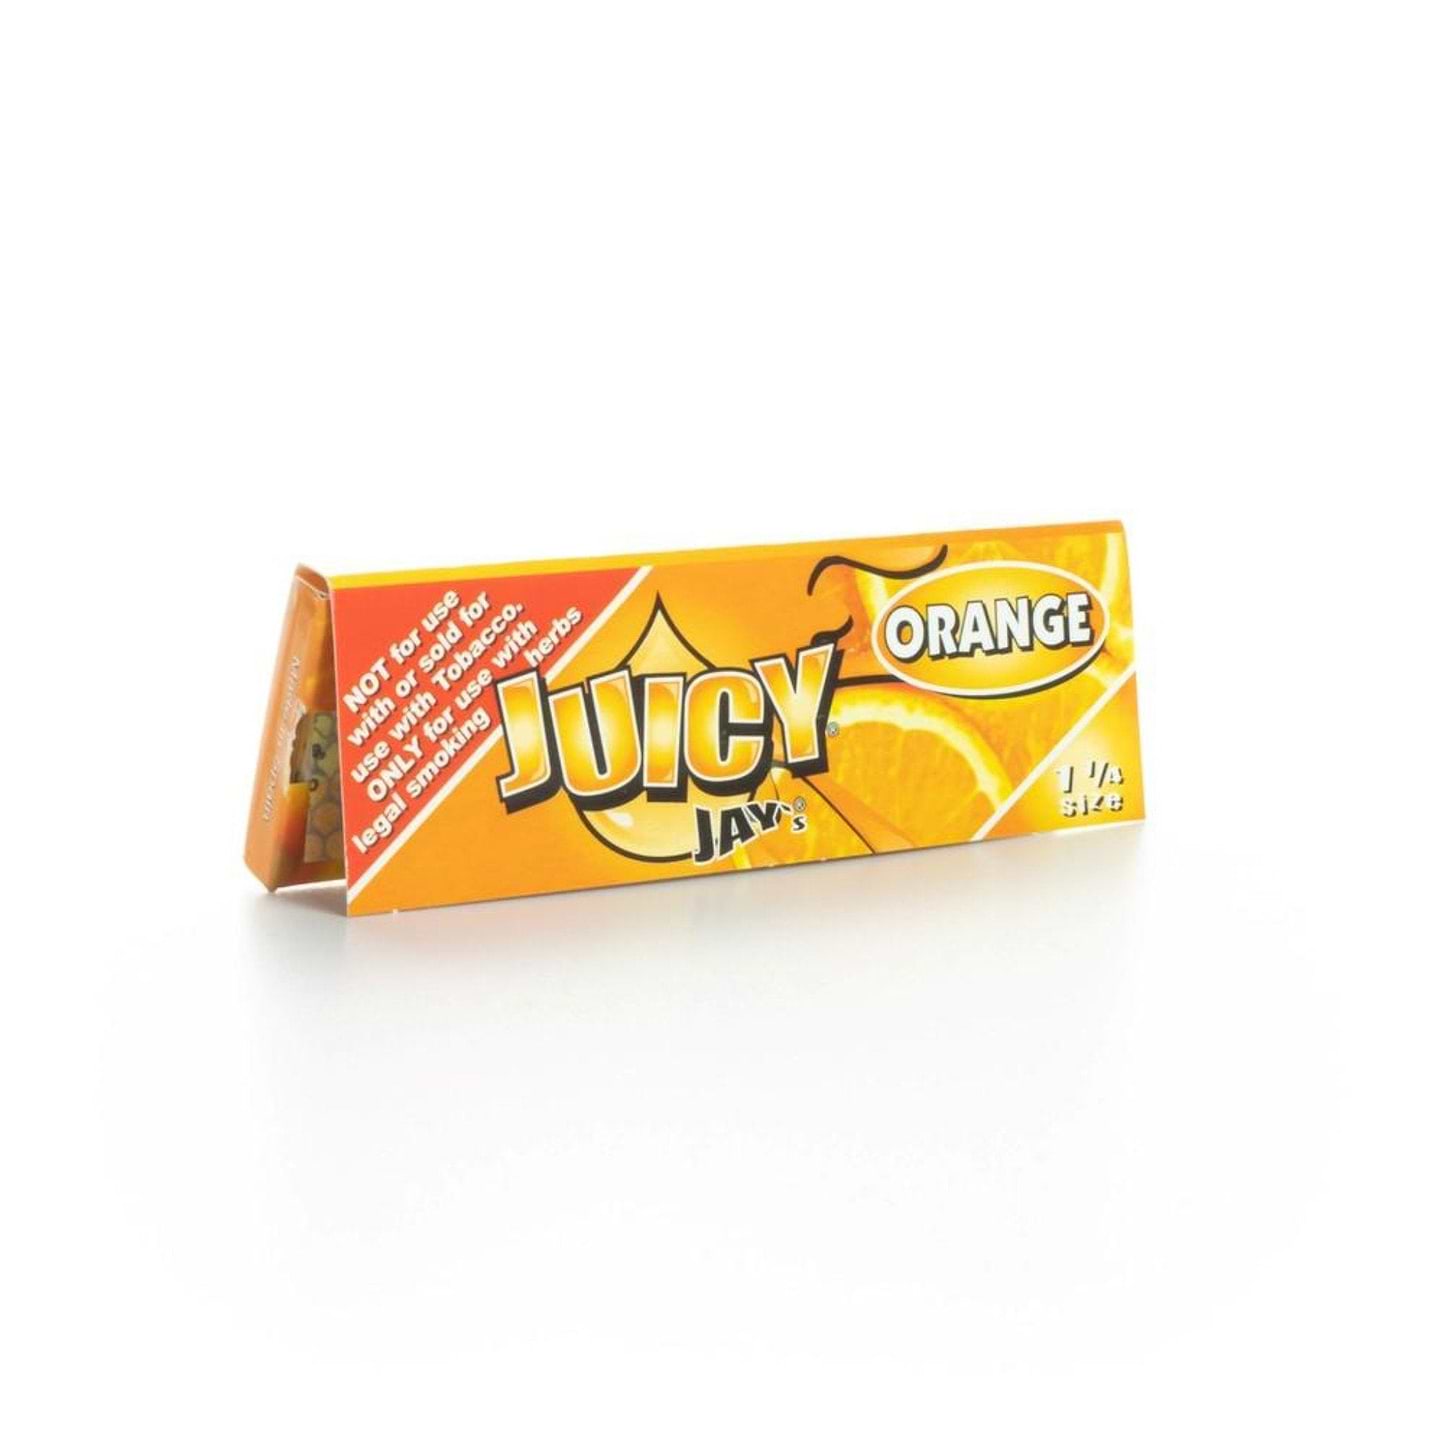 Juicy Jays Rolling Papers - 2 Pack Orange